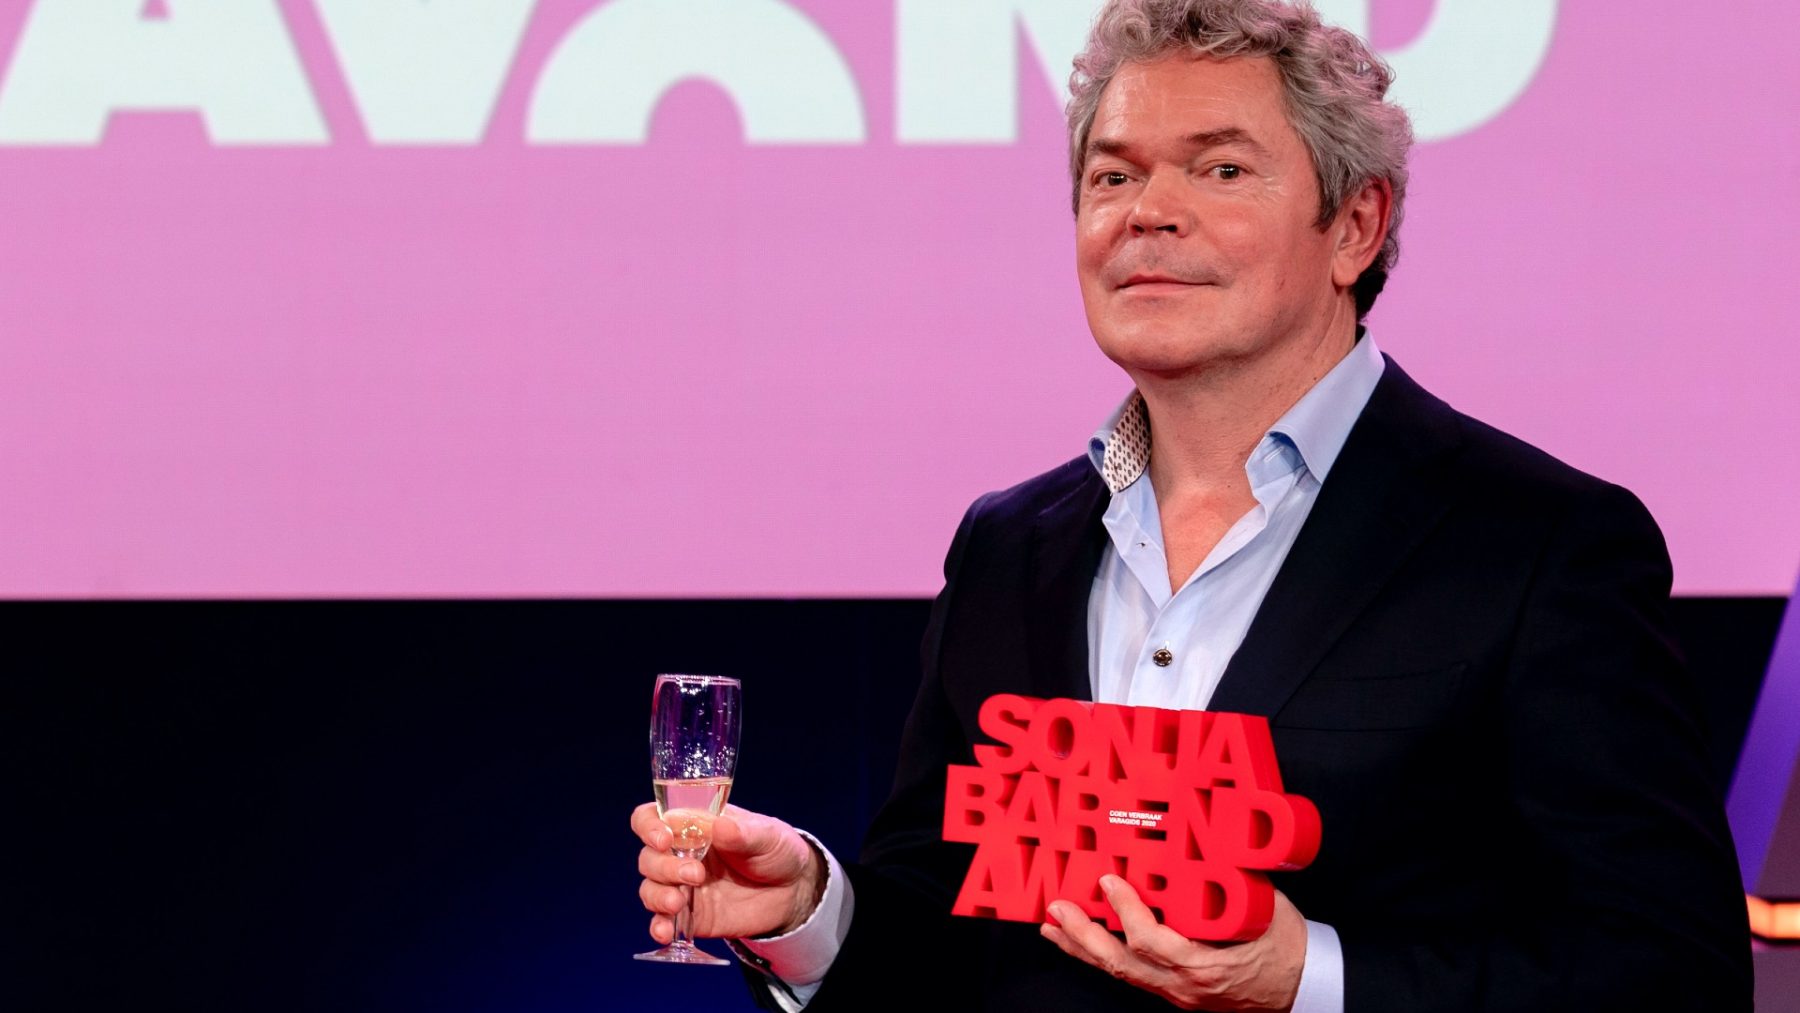 Coen Verbraak wint Sonja Barend Award voor interview met oud-Dutchbatter